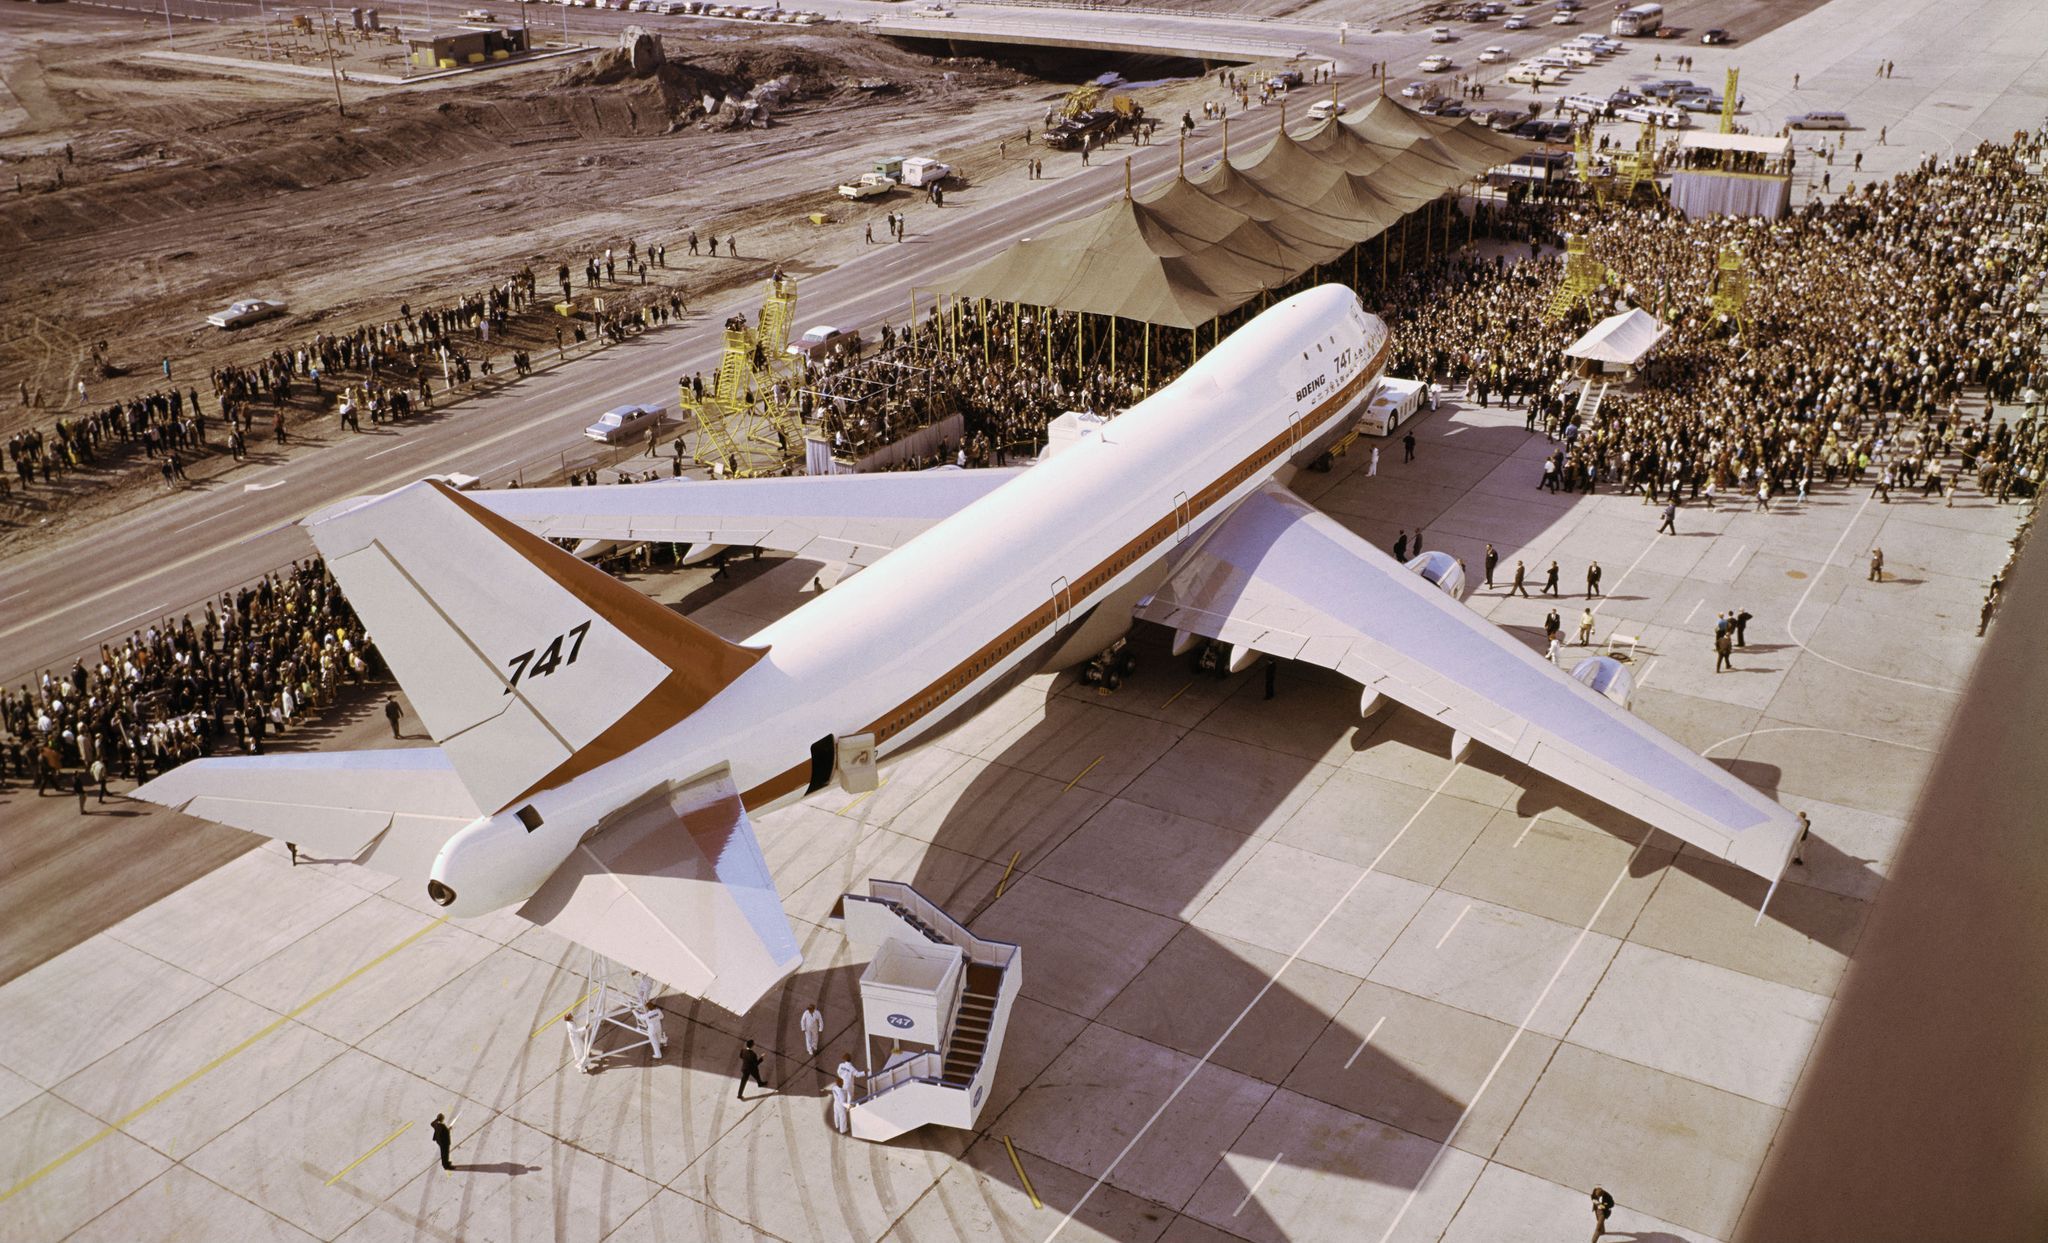 ボーイング 747,飛行機,旅客機,Plane